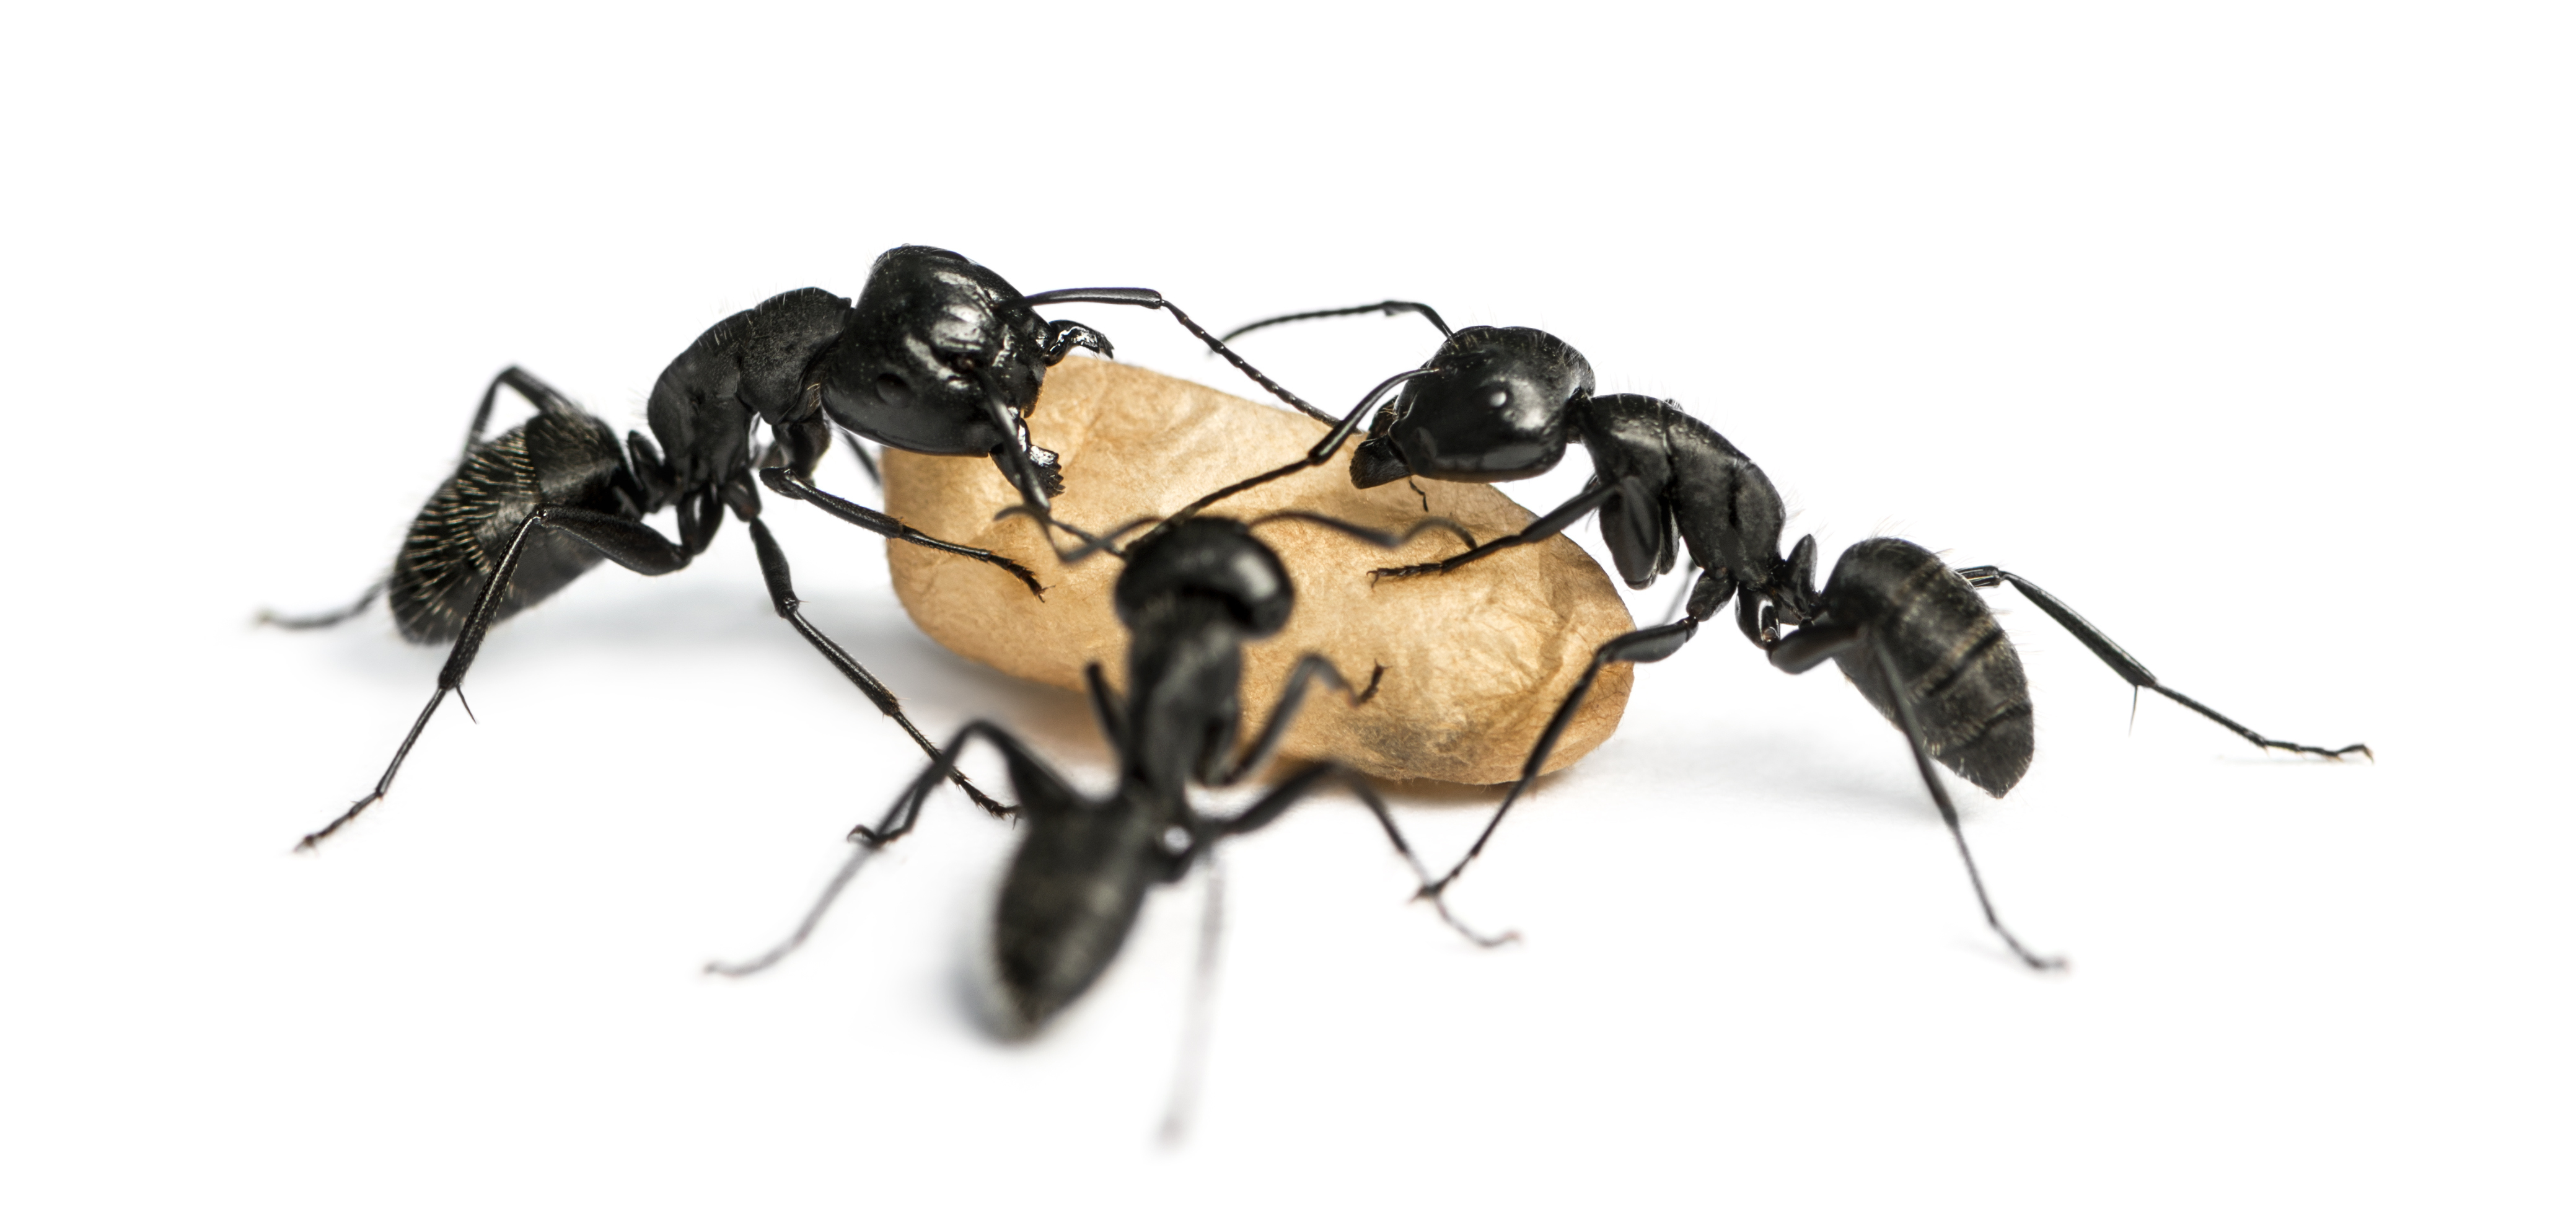 Carpenter Ants in Georgia